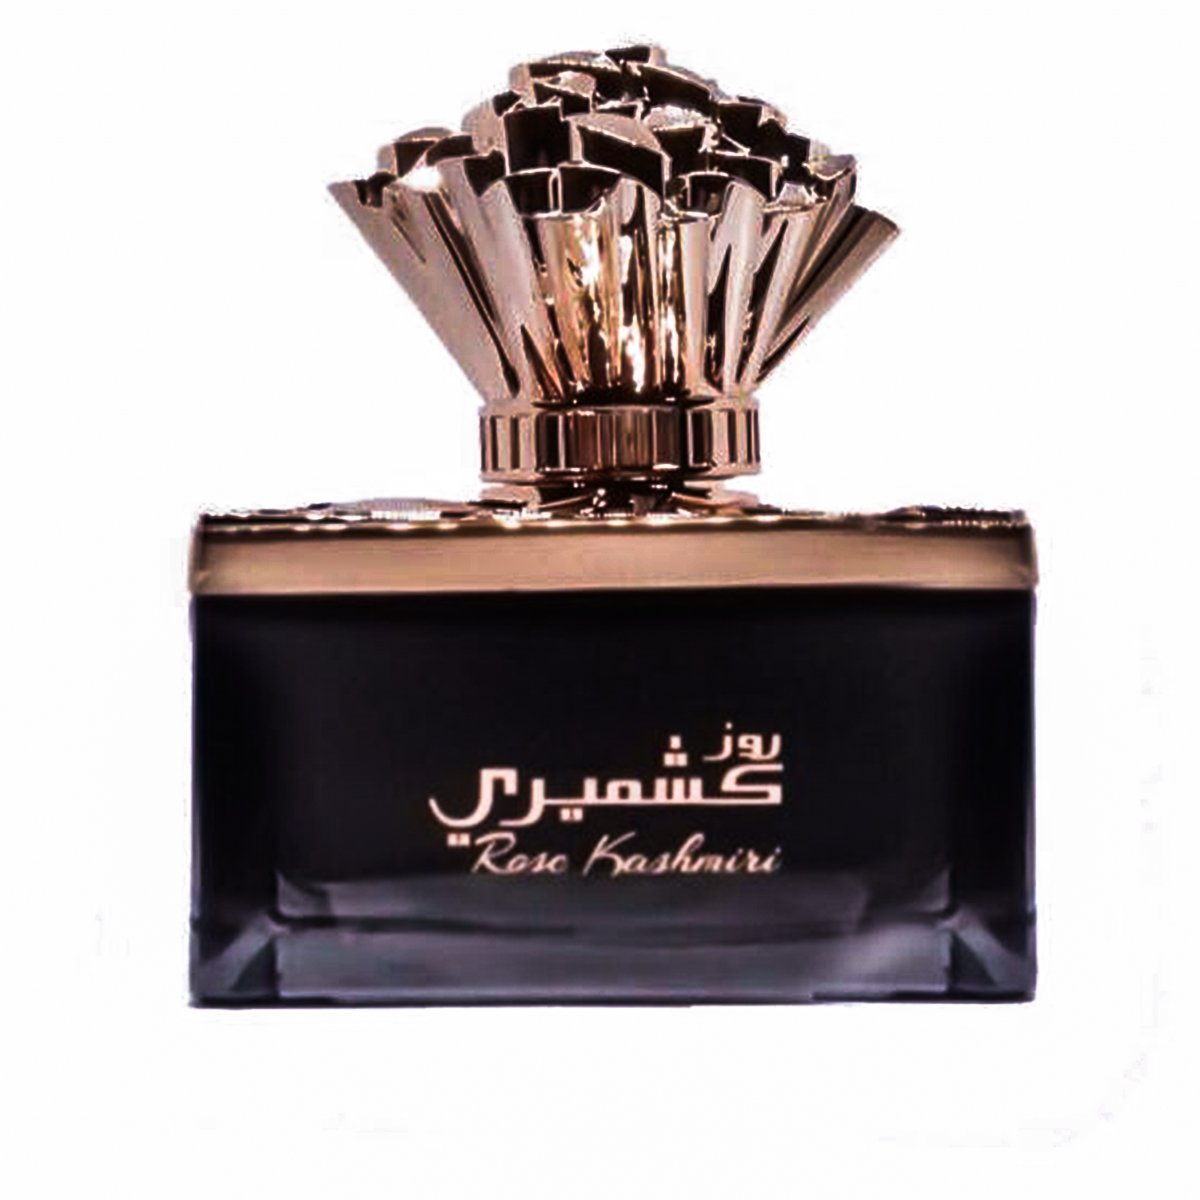 Rose Kashmiri Eau De Parfum 100ml Lattafa-almanaar Islamic Store